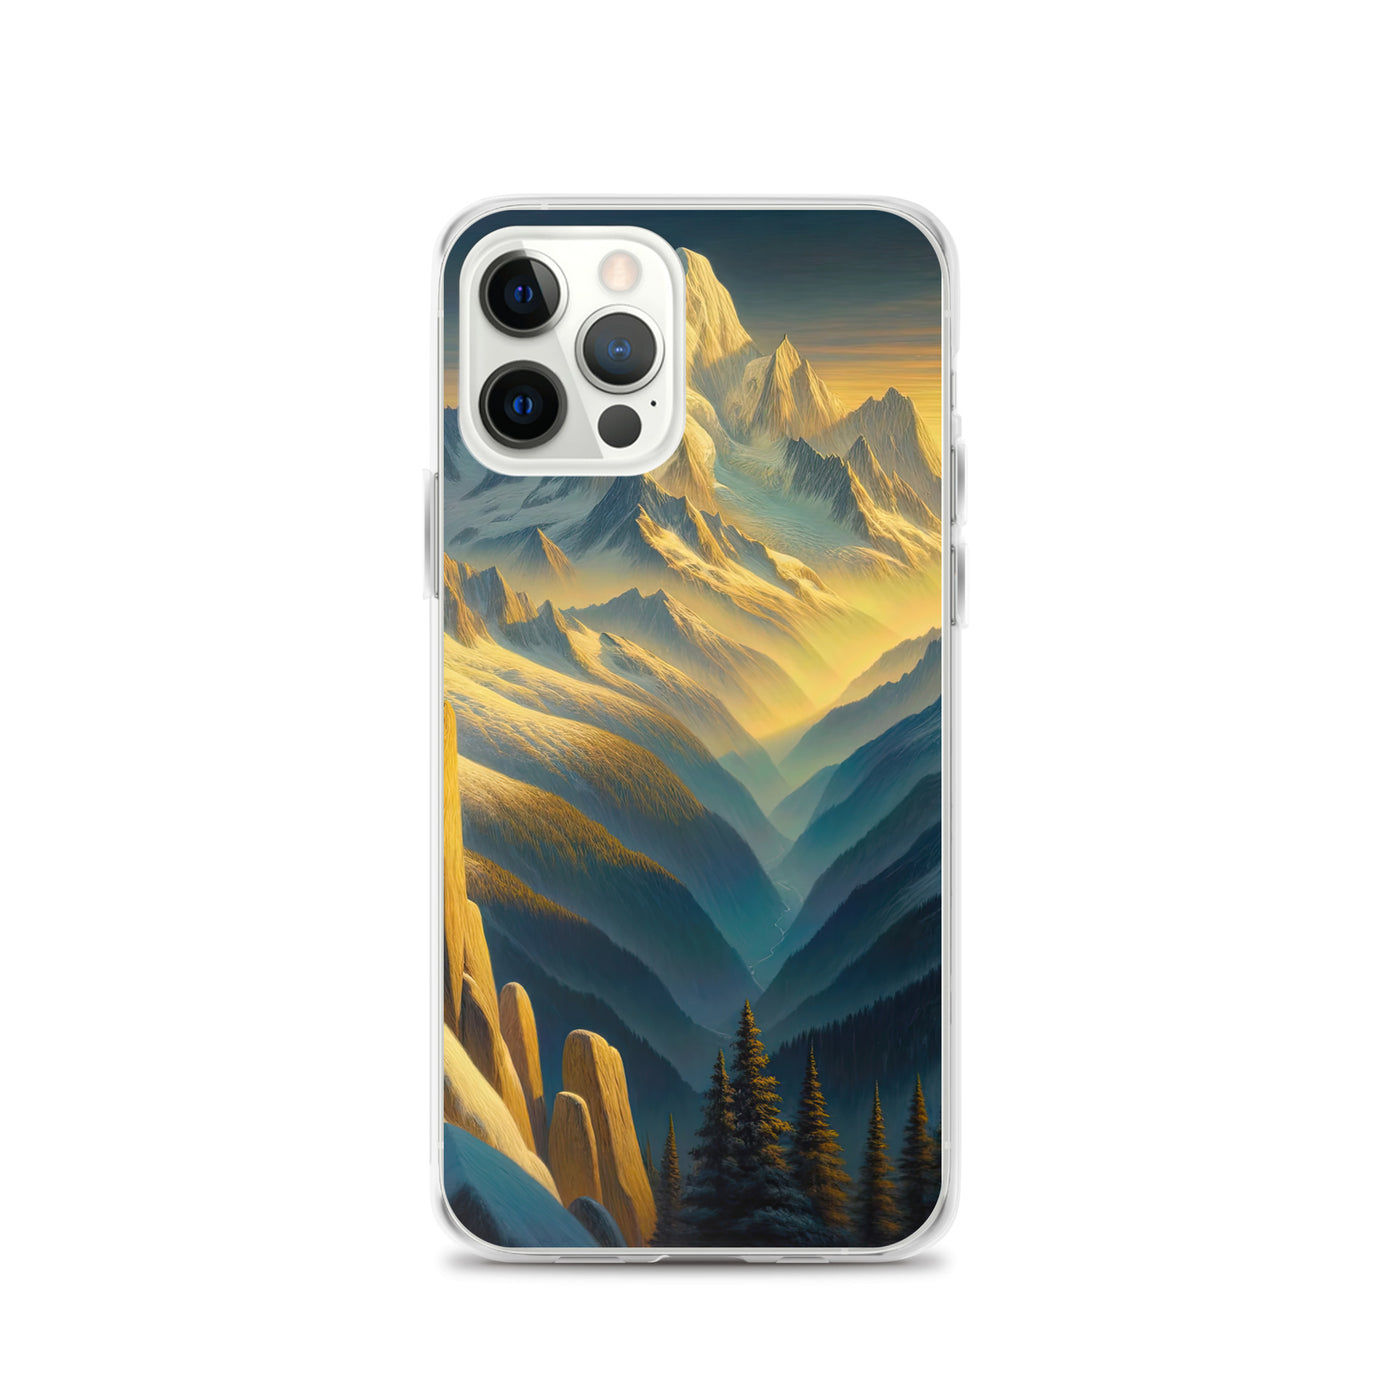 Ölgemälde eines Wanderers bei Morgendämmerung auf Alpengipfeln mit goldenem Sonnenlicht - iPhone Schutzhülle (durchsichtig) wandern xxx yyy zzz iPhone 12 Pro